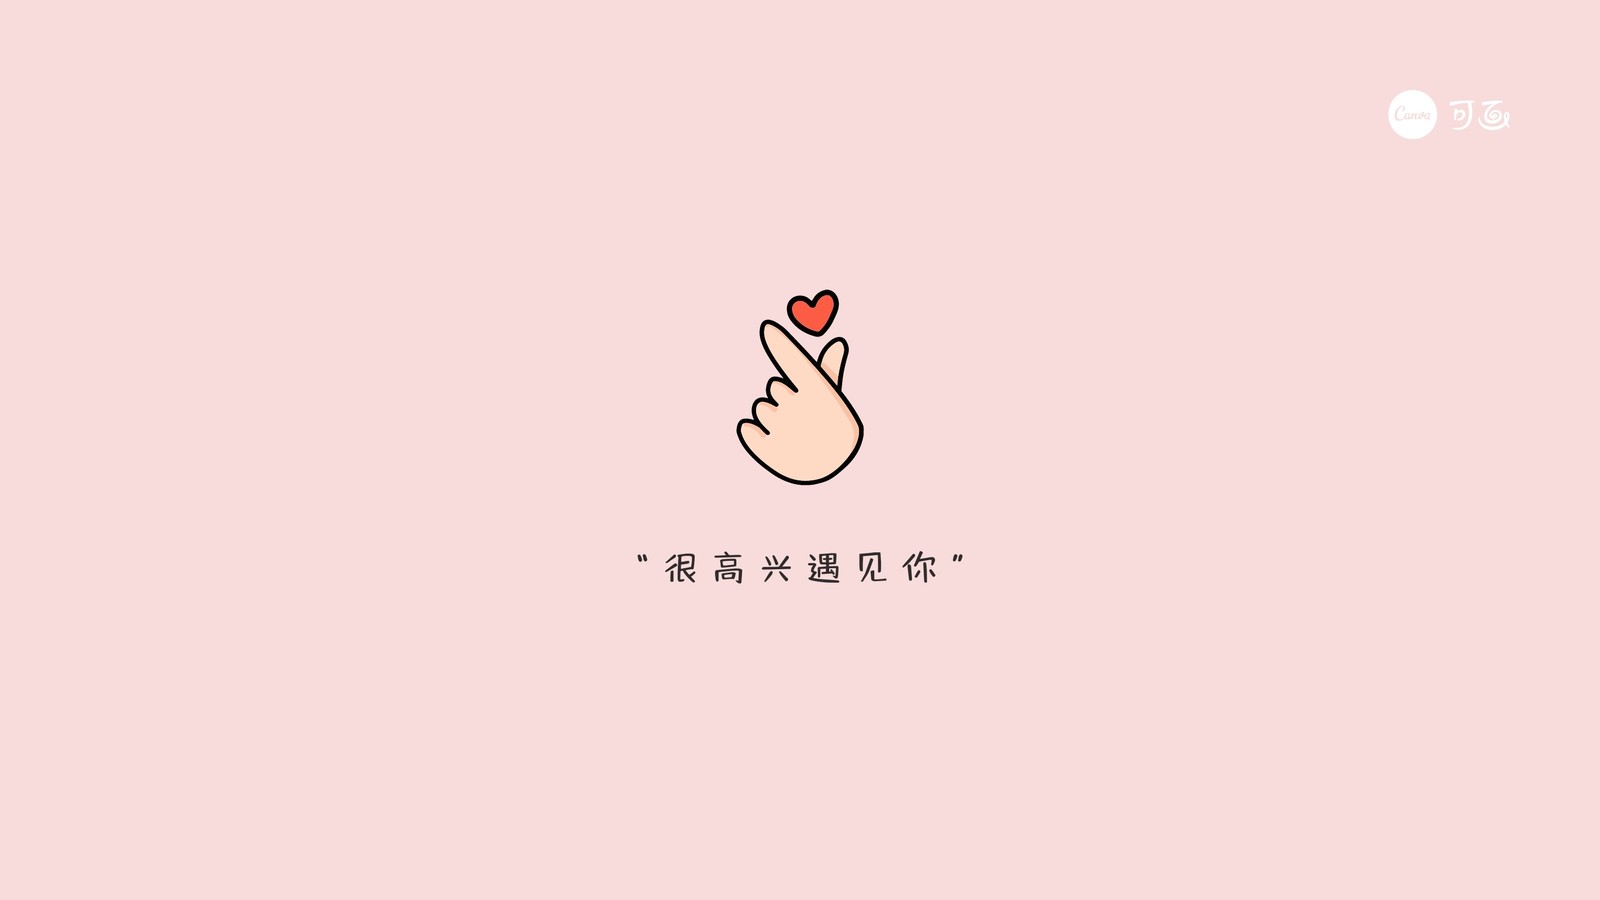 粉白色比心手势可爱简洁分享中文电脑桌面